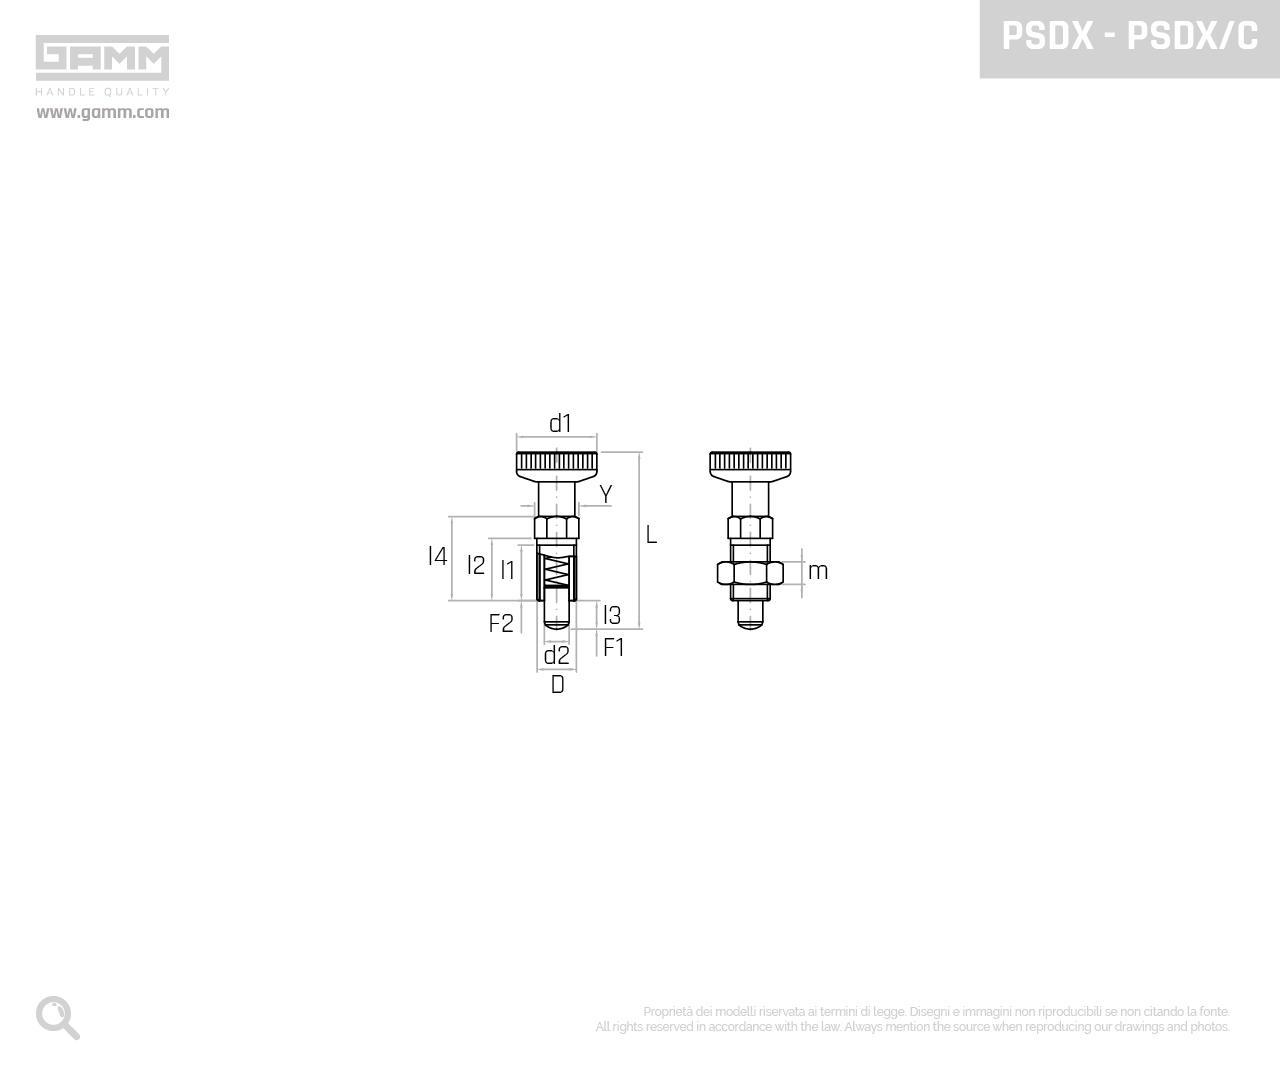 PSDX PSDX C disegno pistoncini e pressori GAMM